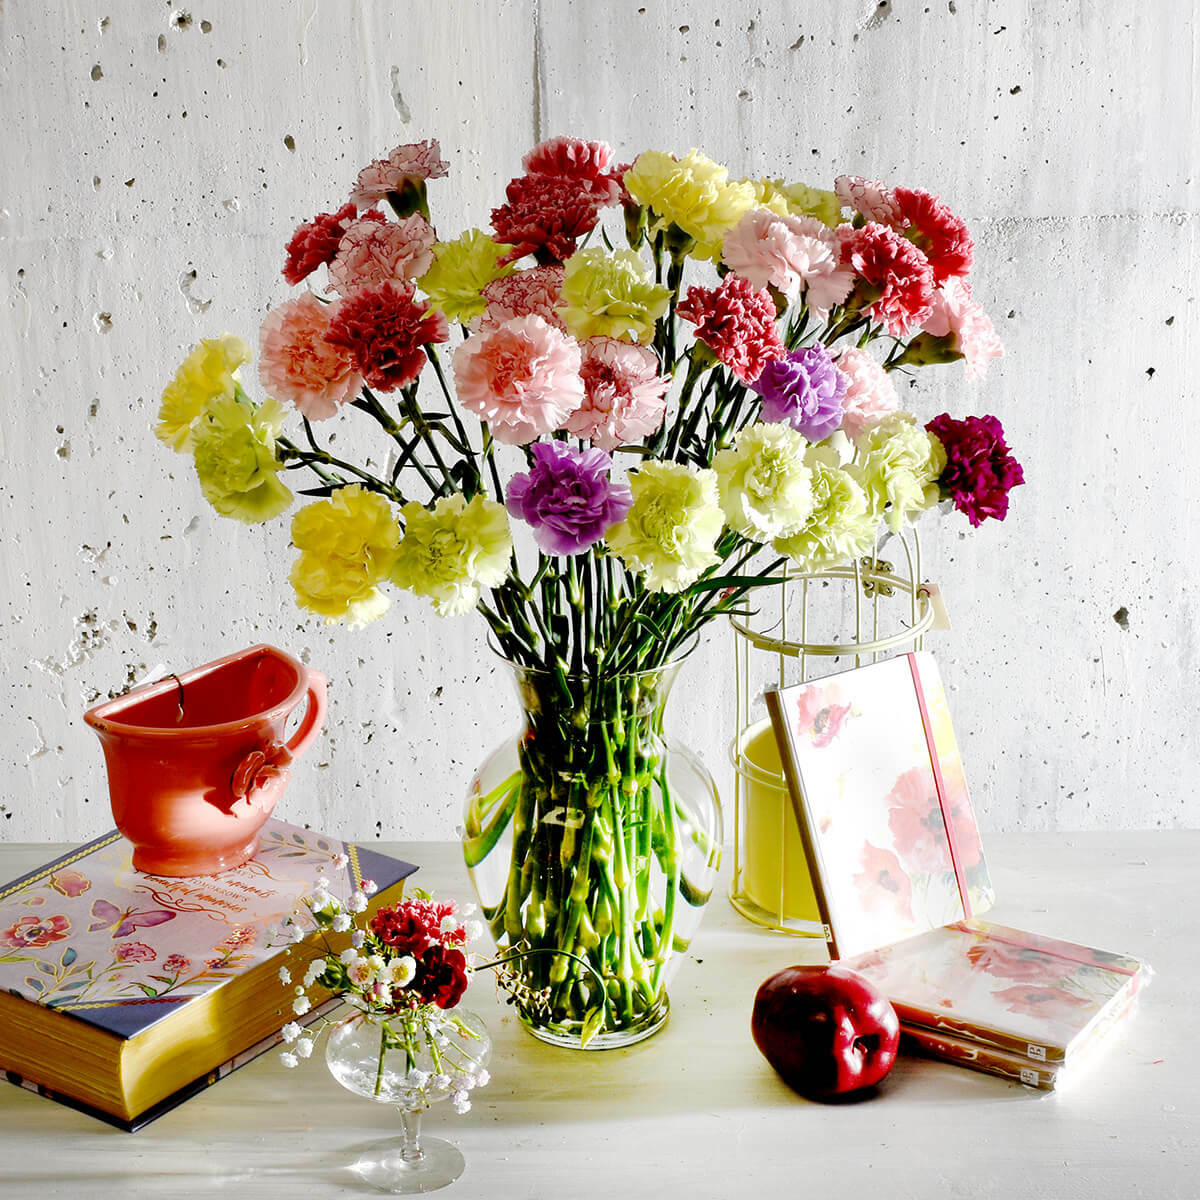 Hoa cẩm chướng đại diện cho sự sung túc, dồi dào.